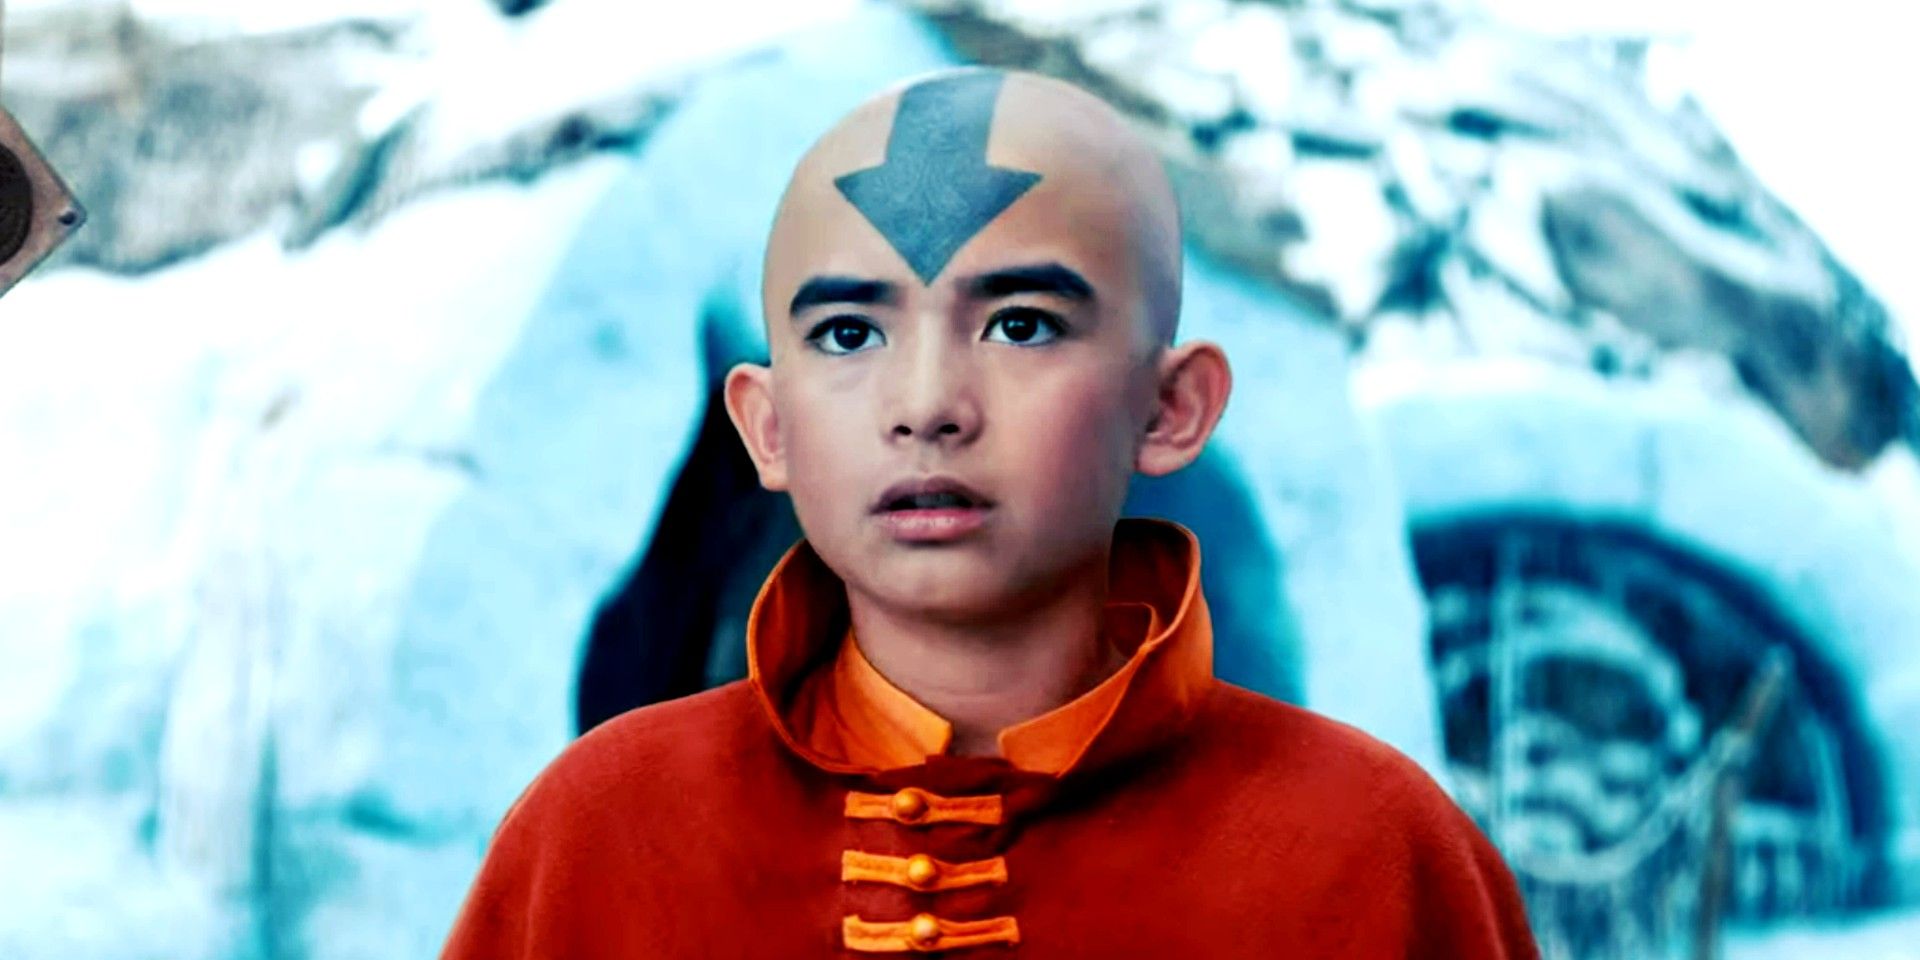 Aang looking shocked when seeing Zuko in Avatar The Last Airbender